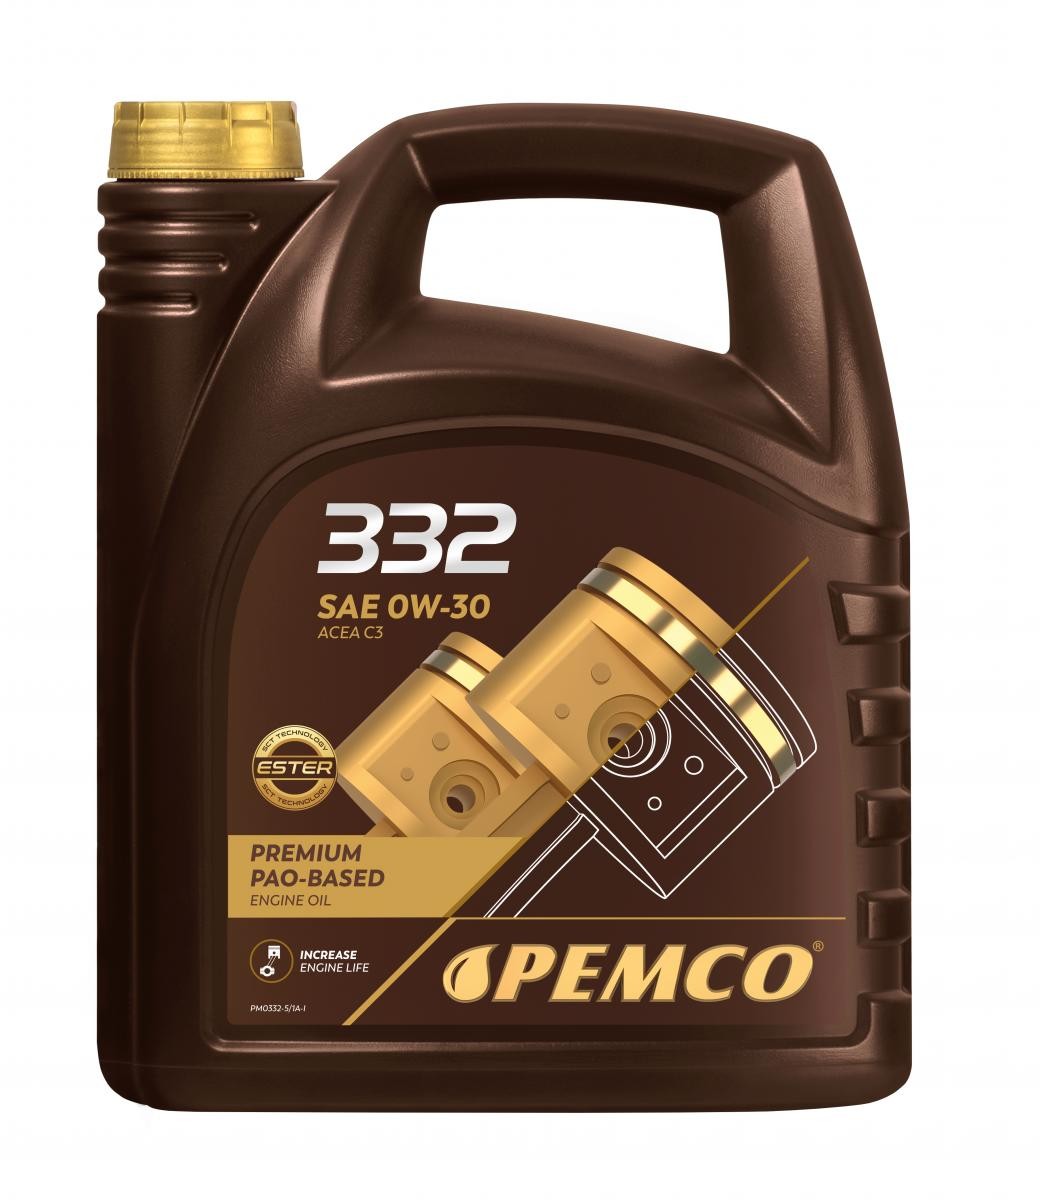 Car oil PSA B71 2290 PEMCO - PM0332-5 332